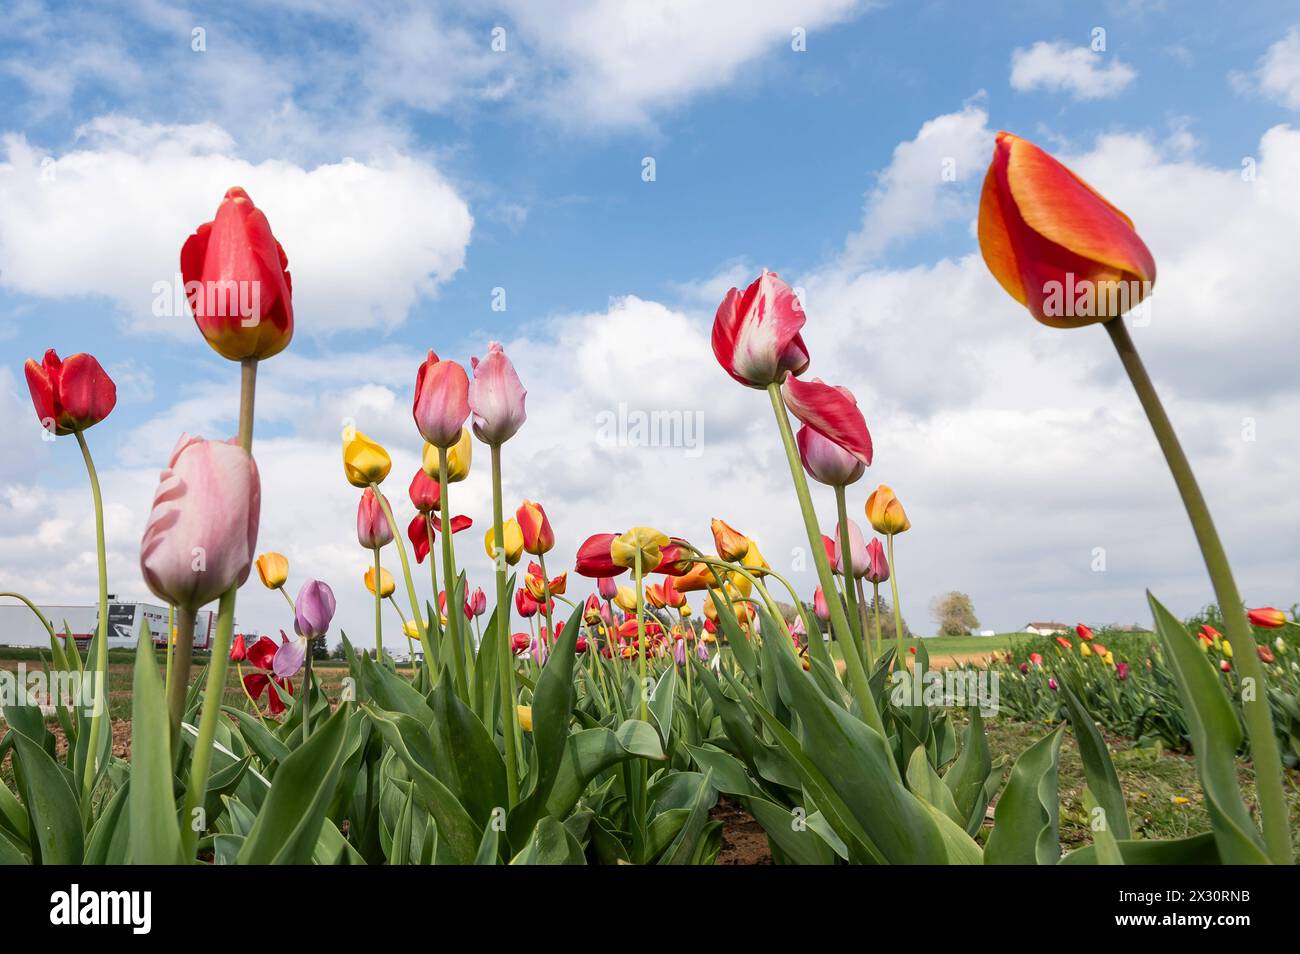 Tulpen blühen auf einem Feld zum selber schneiden. Rottweil Baden-Württemberg Deutschland *** tulipani in fiore in un campo per tagliarsi Rottweil Baden Württemberg Germania Foto Stock